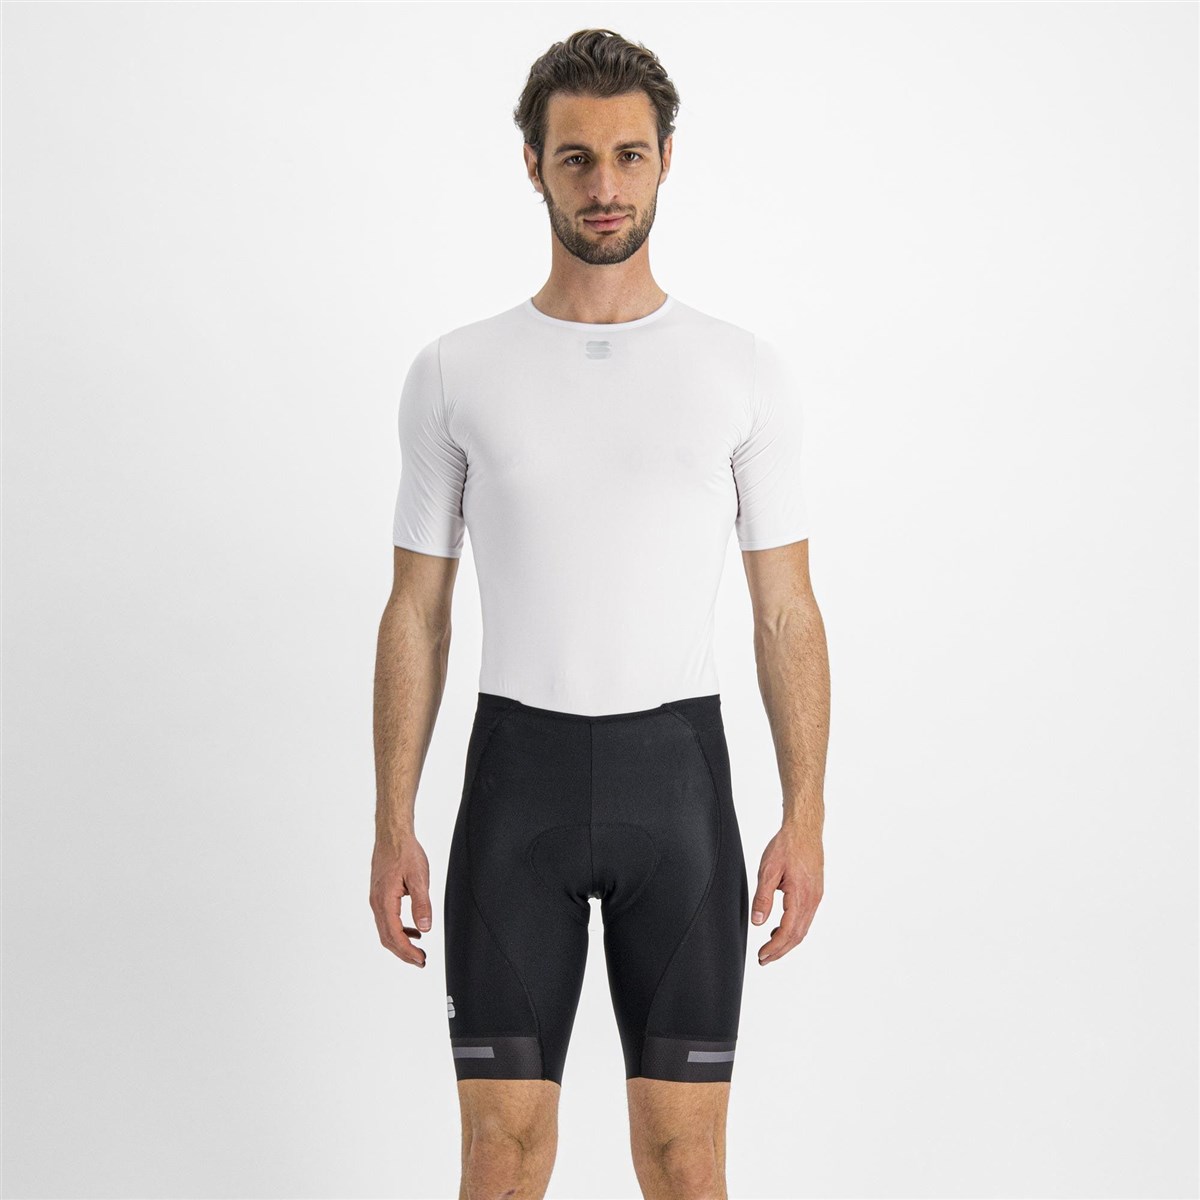 Sportful Neo Shorts product image